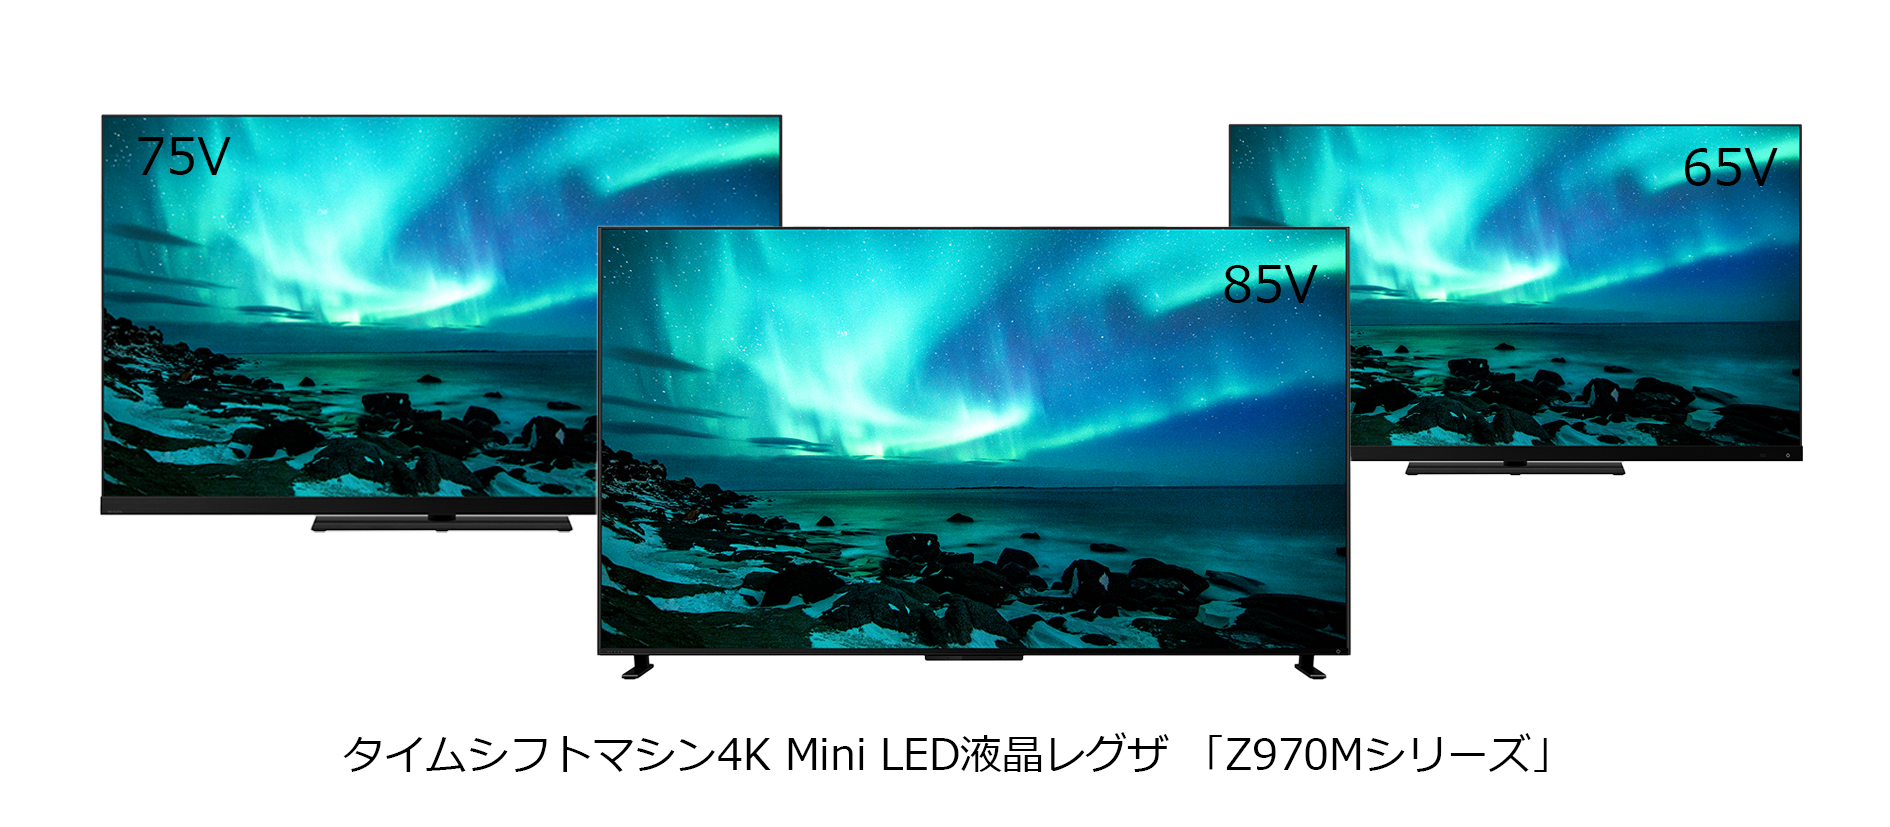 タイムシフトマシン4K Mini LED液晶レグザ「Z970Mシリーズ」発売 ...